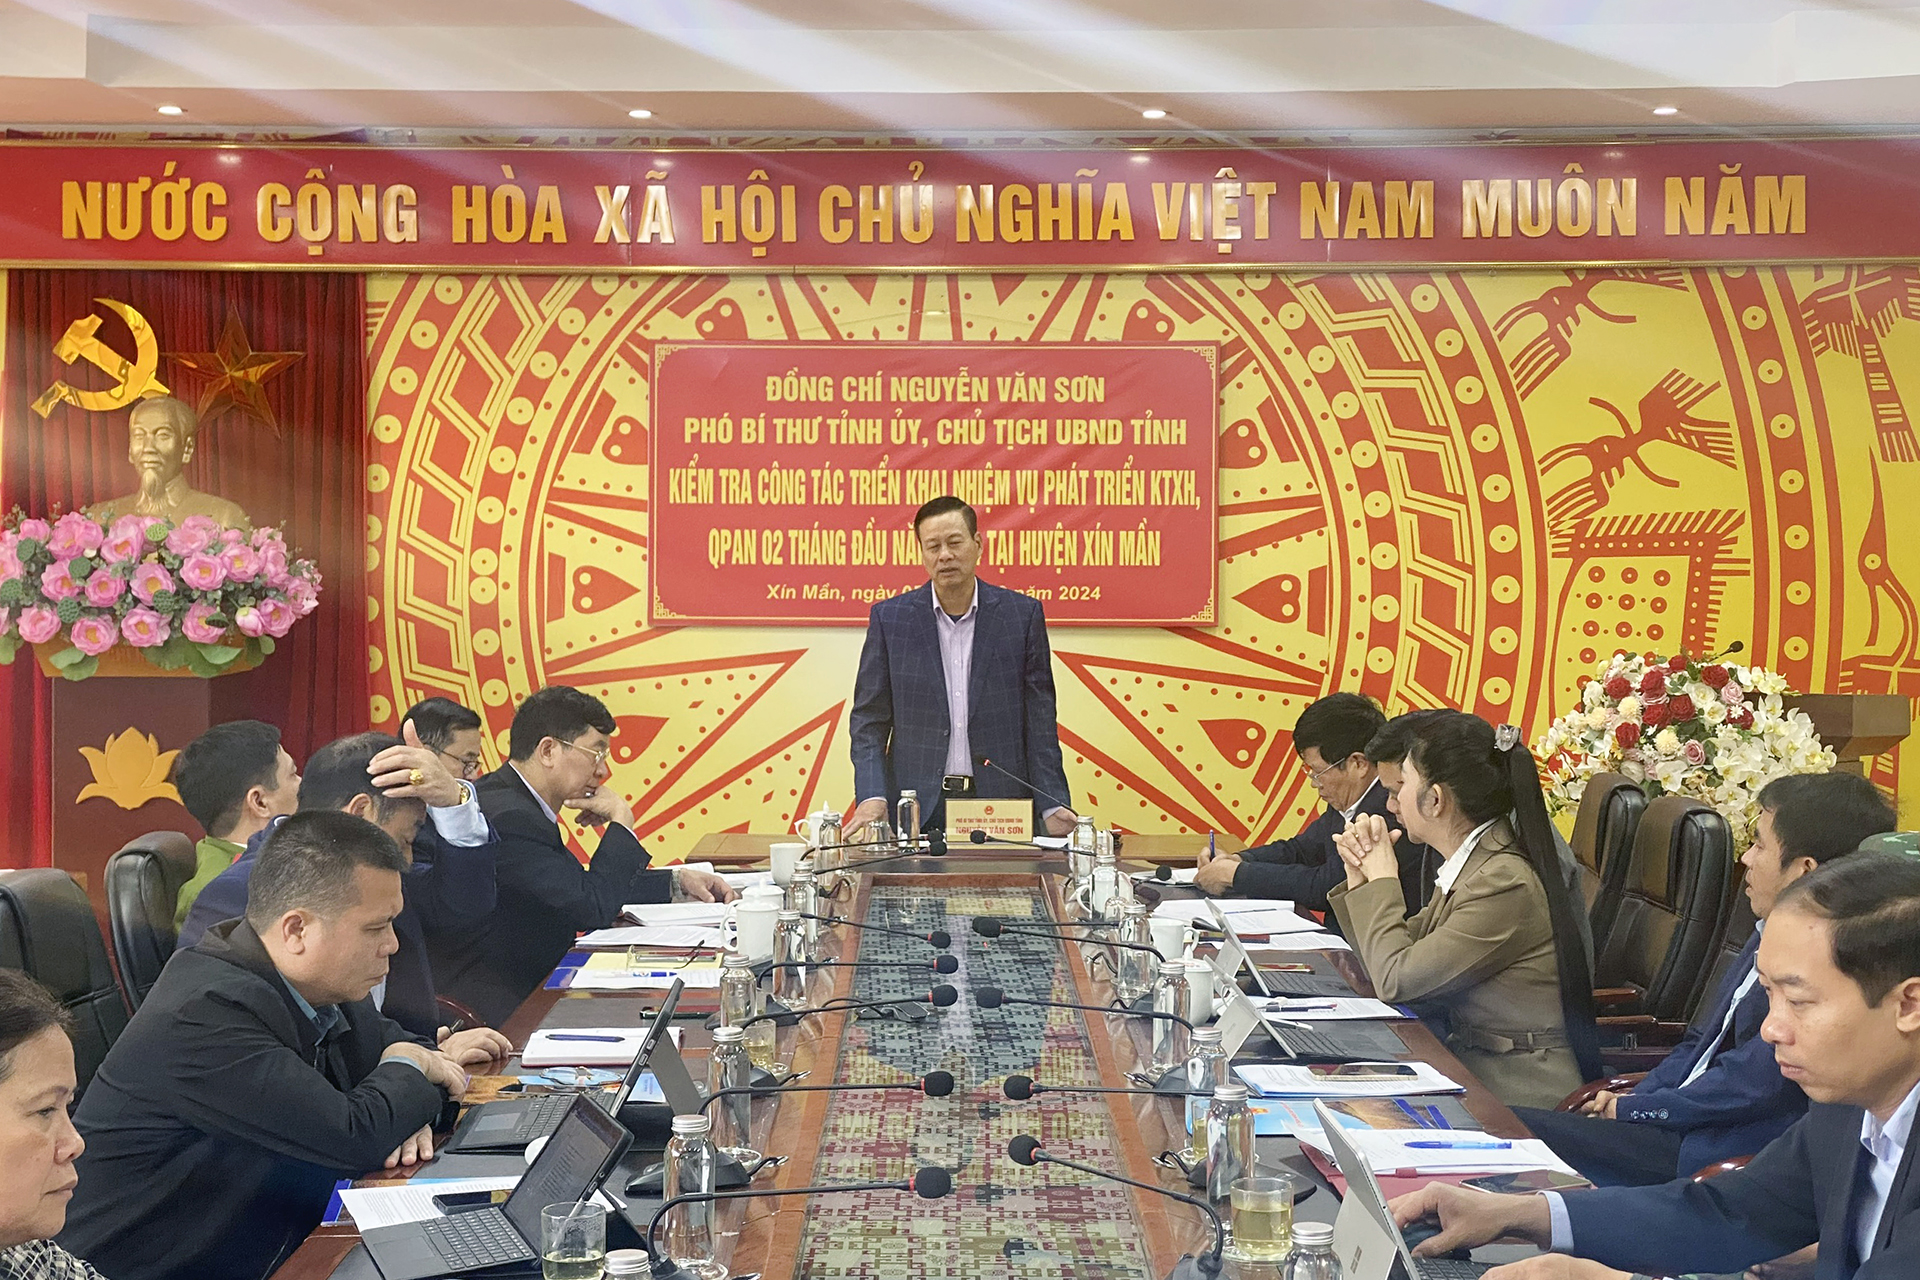 Phó Bí thư Tỉnh ủy, Chủ tịch UBND tỉnh Nguyễn Văn Sơn làm việc tại huyện Xín Mần